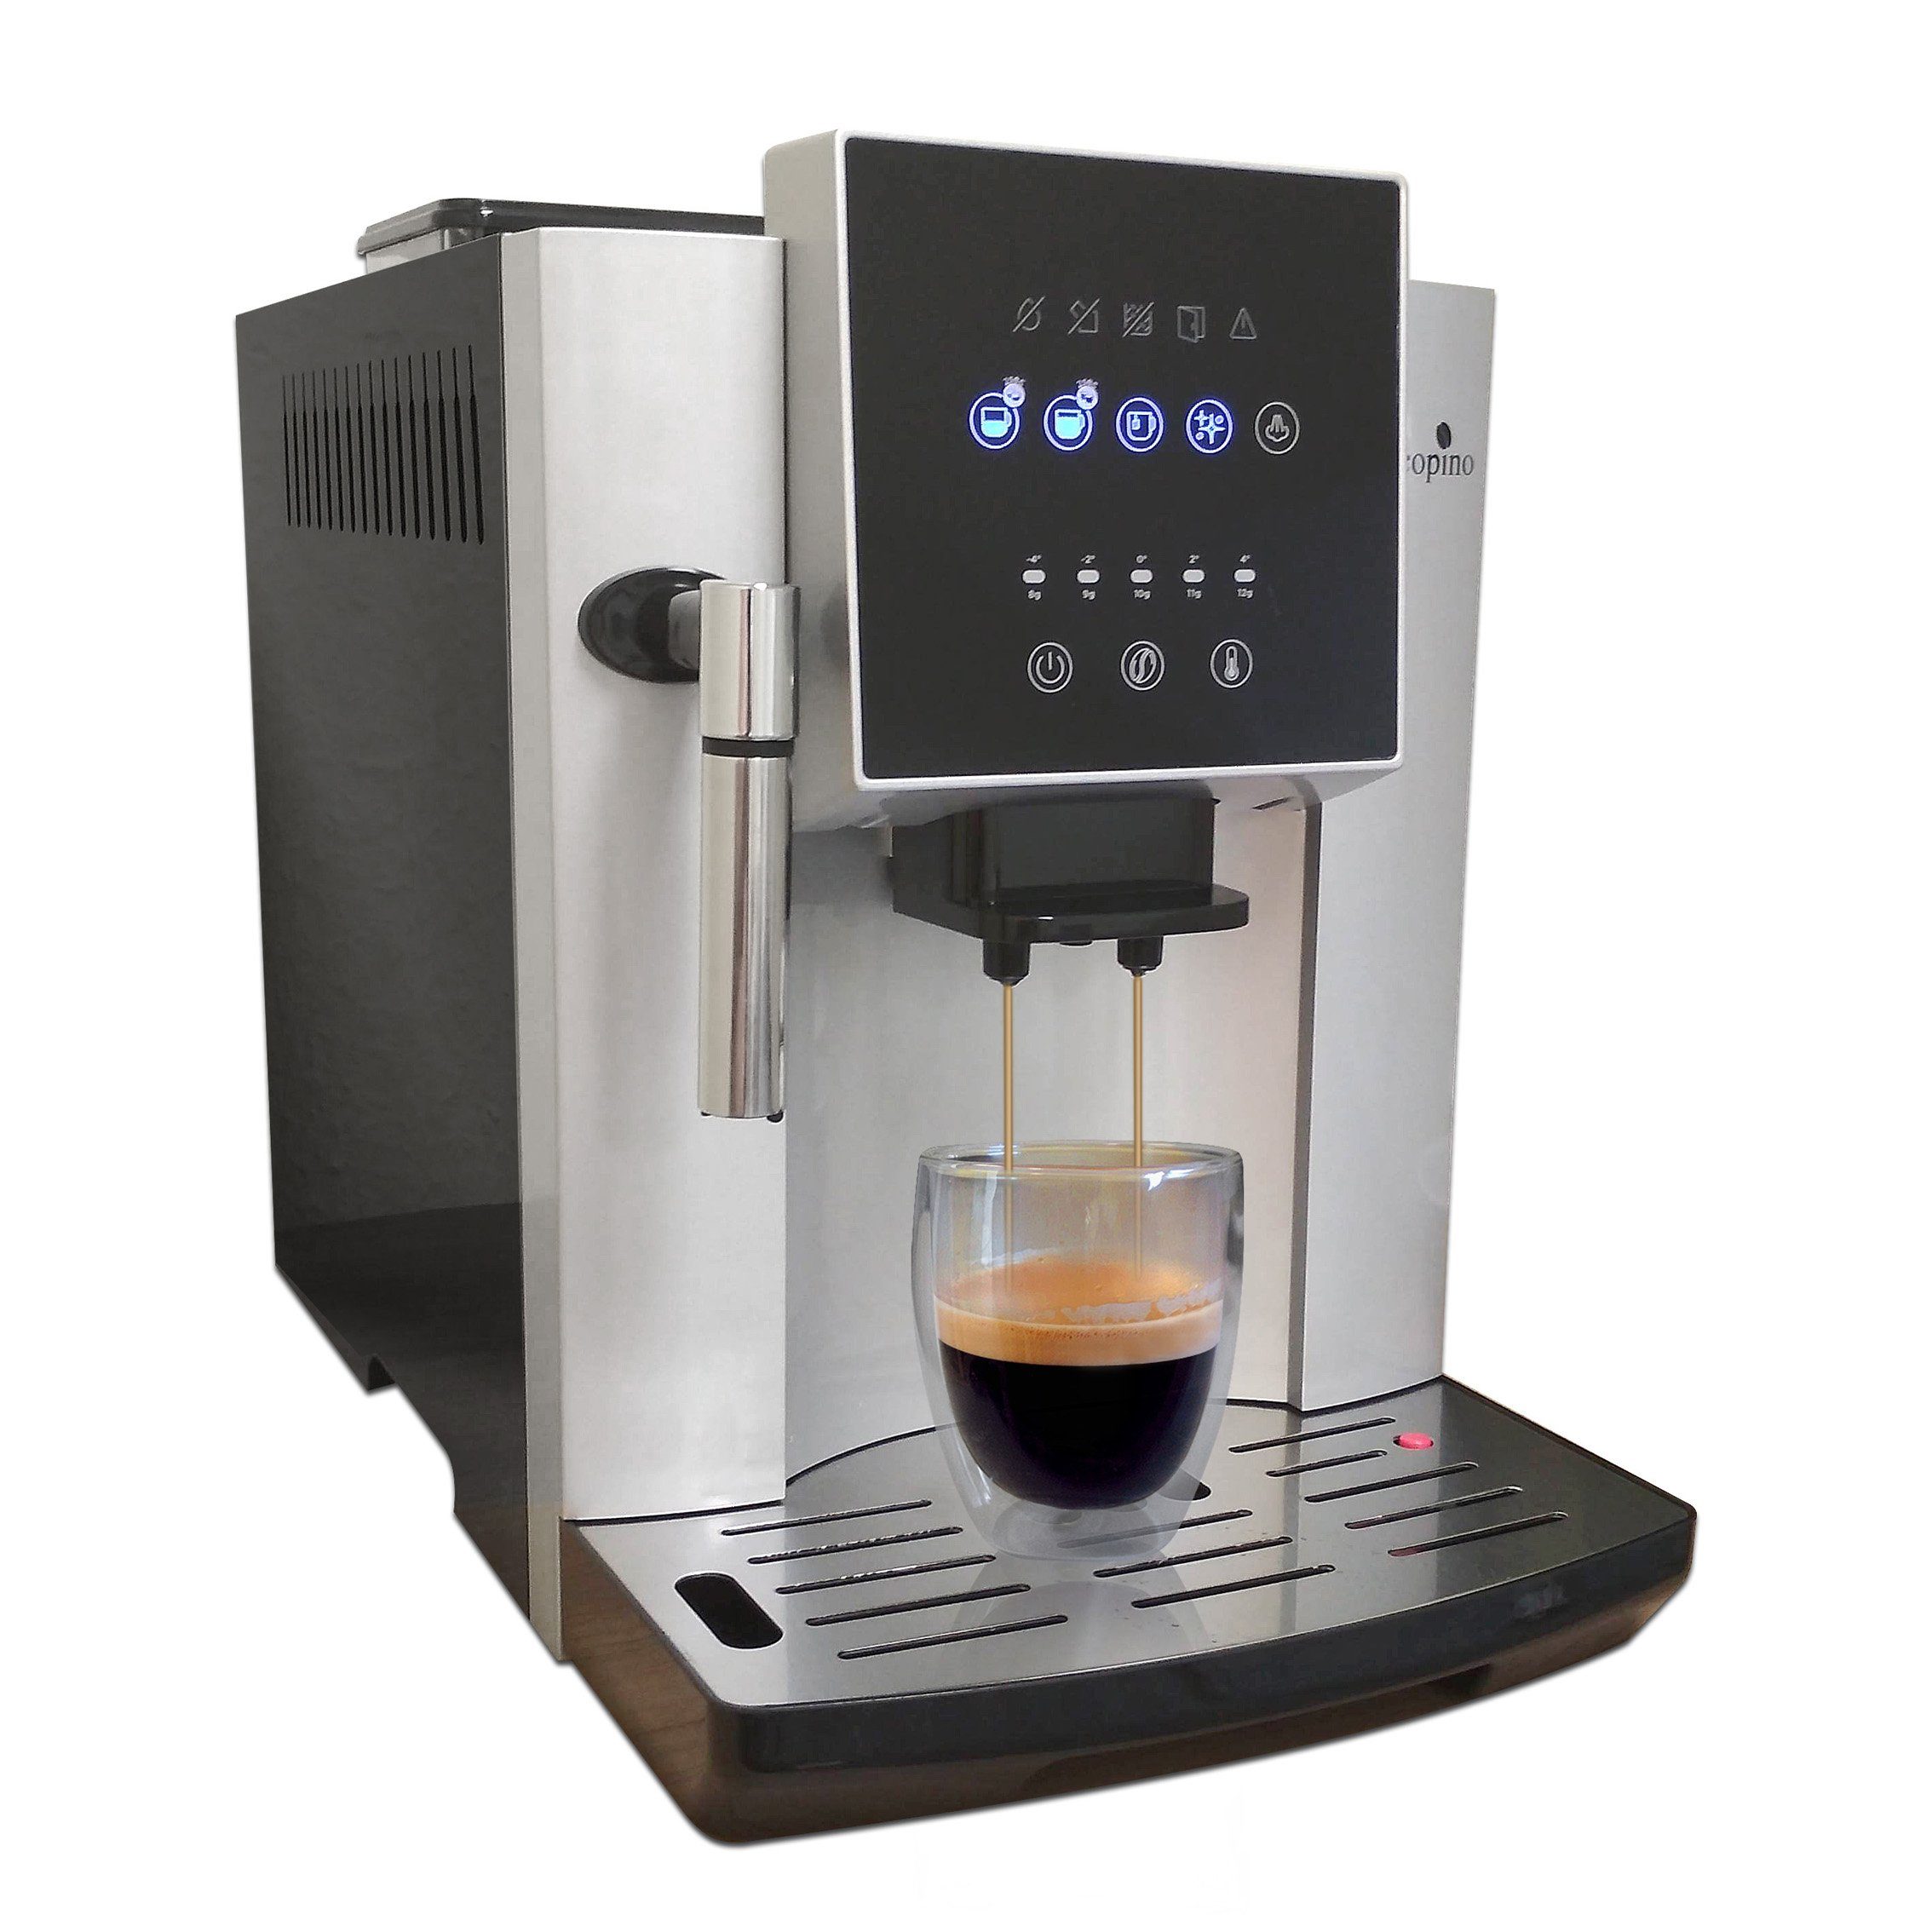 Acopino Kaffeevollautomat Napoli mit Dampfdüse für perfekten Milchschaum, Herausnehmbare Brüheinheit, ULKA Hochleistungspumpe, großes Display